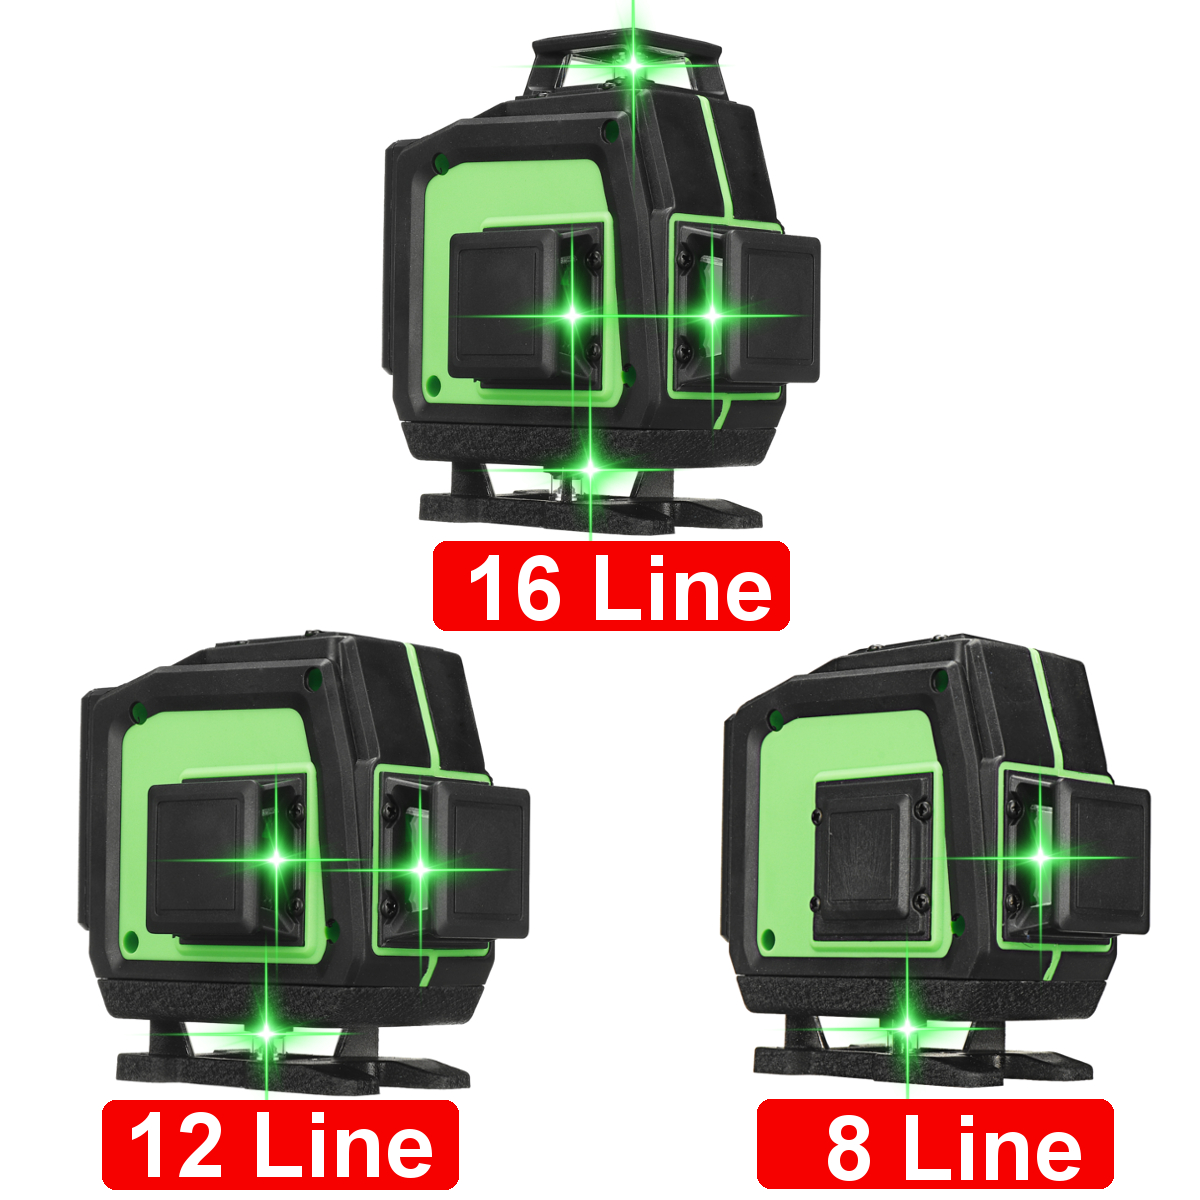 81216-Line-360deg-4D-Horizontal-Vertical-Cross-Green-Light-Laser-Level-Self-Leveling-Measure-Super-P-1866050-2